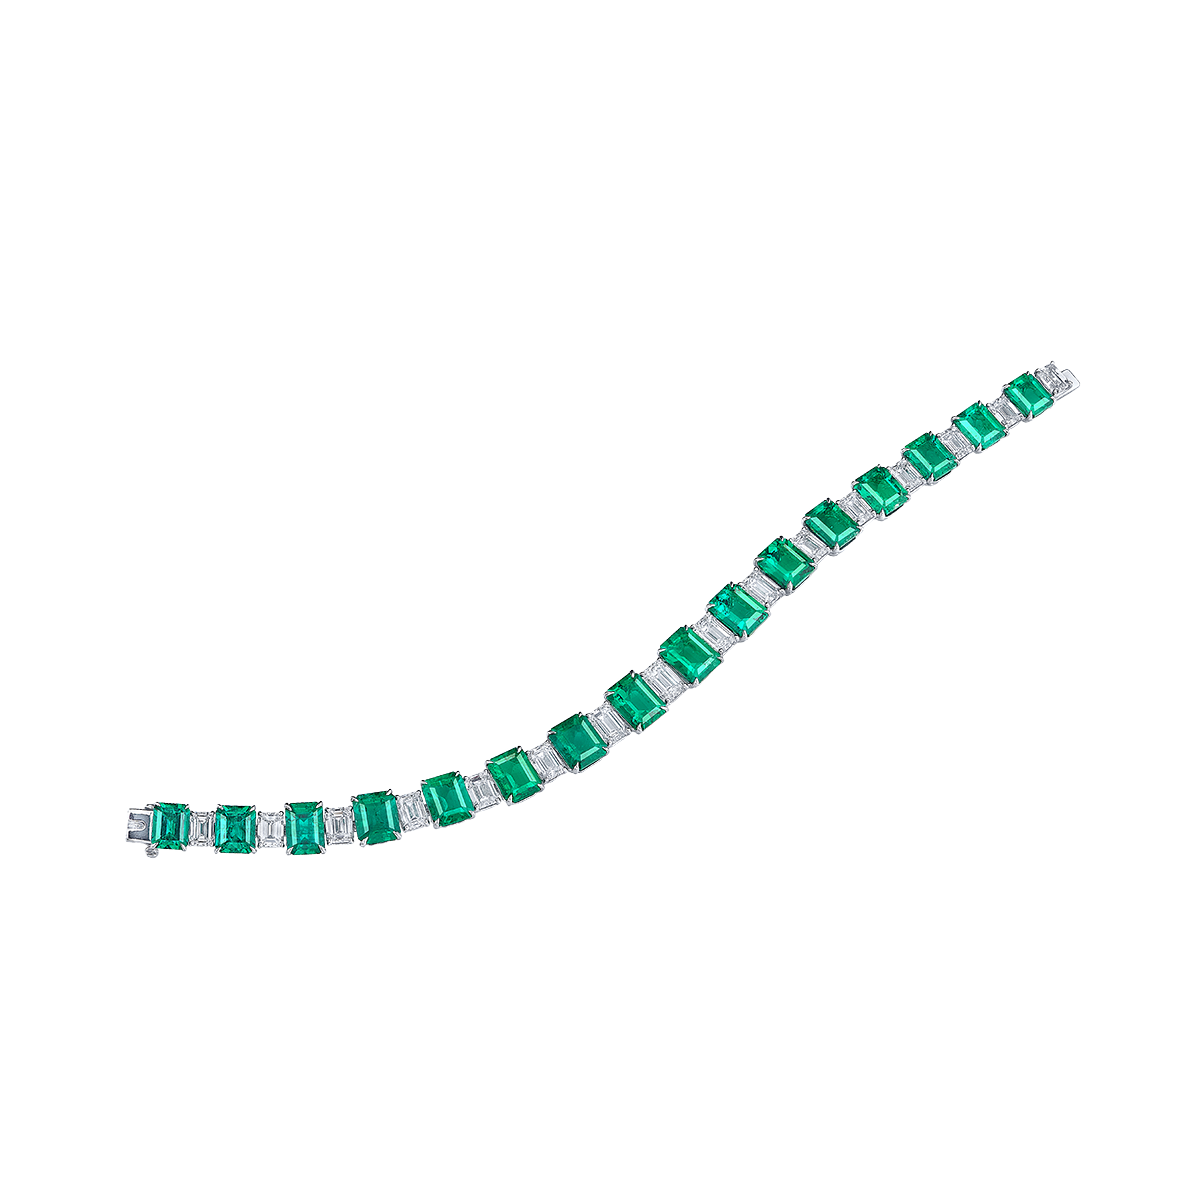 18.99 克拉 哥倫比亞天然無浸油艷彩祖母綠鑽石手鍊
Colombian Vivid Green Emerald 
and Diamond Bracelet